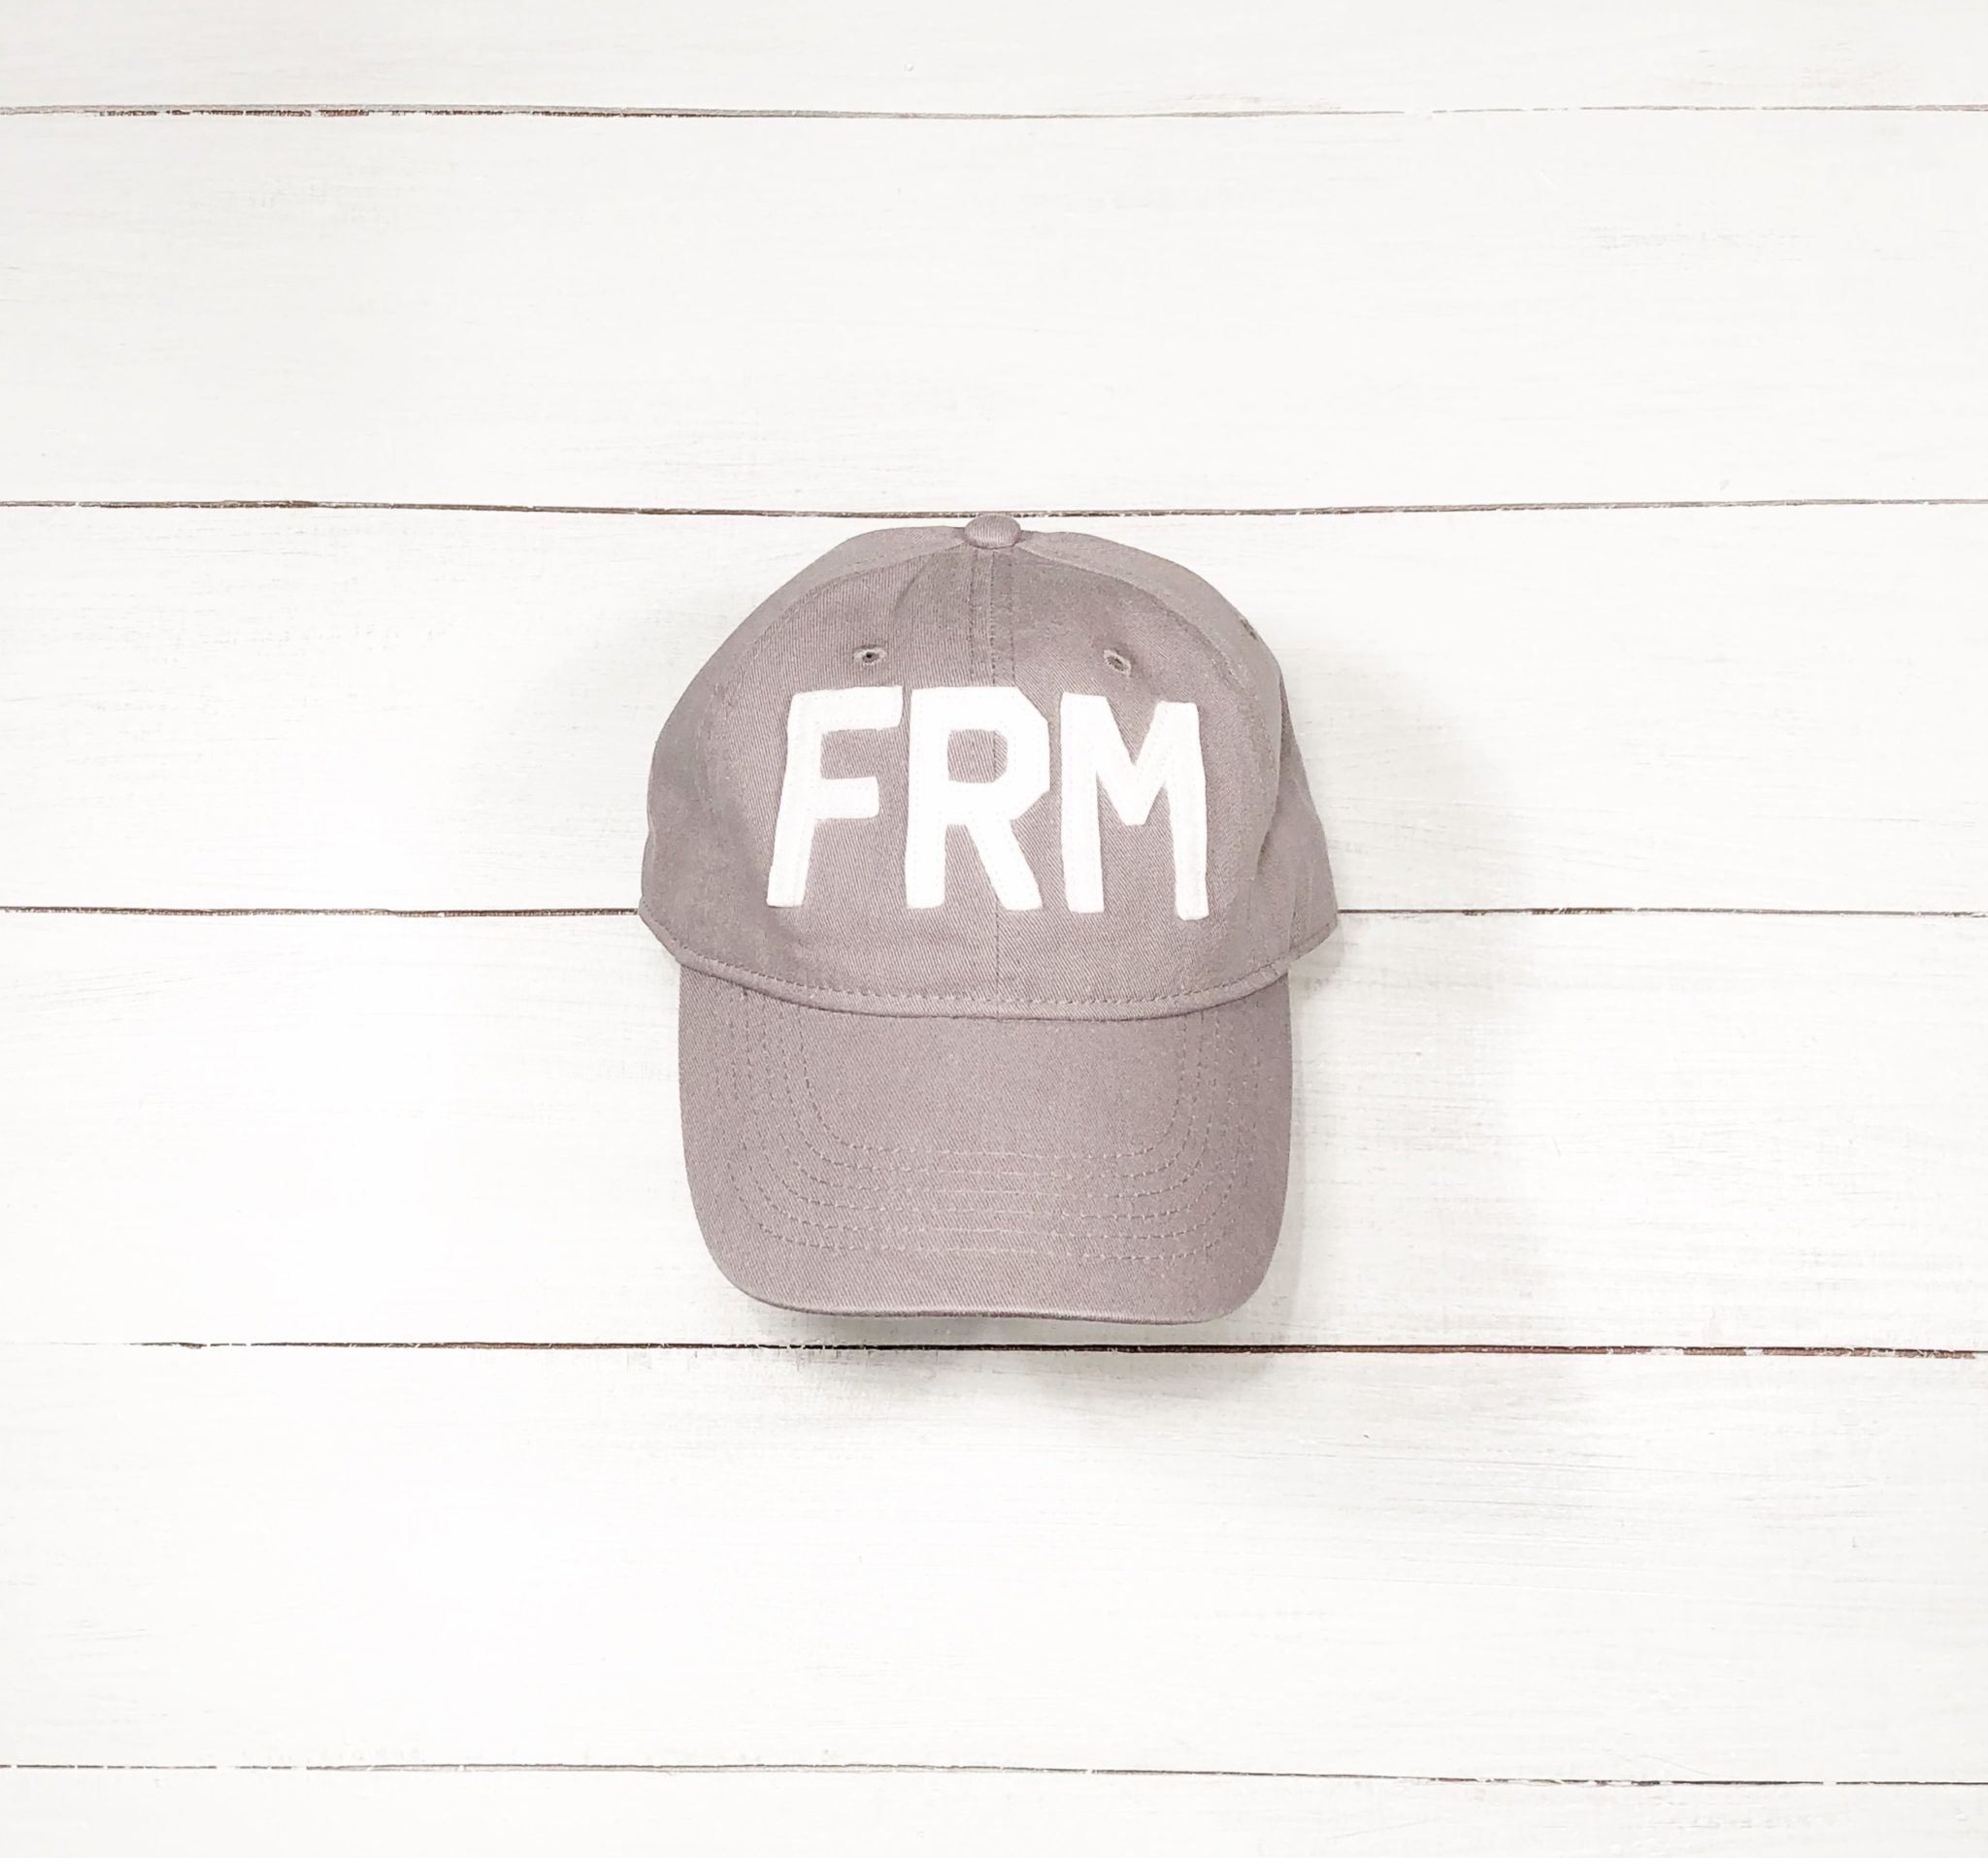 Farmhouse (FRM) "City Code" Hat